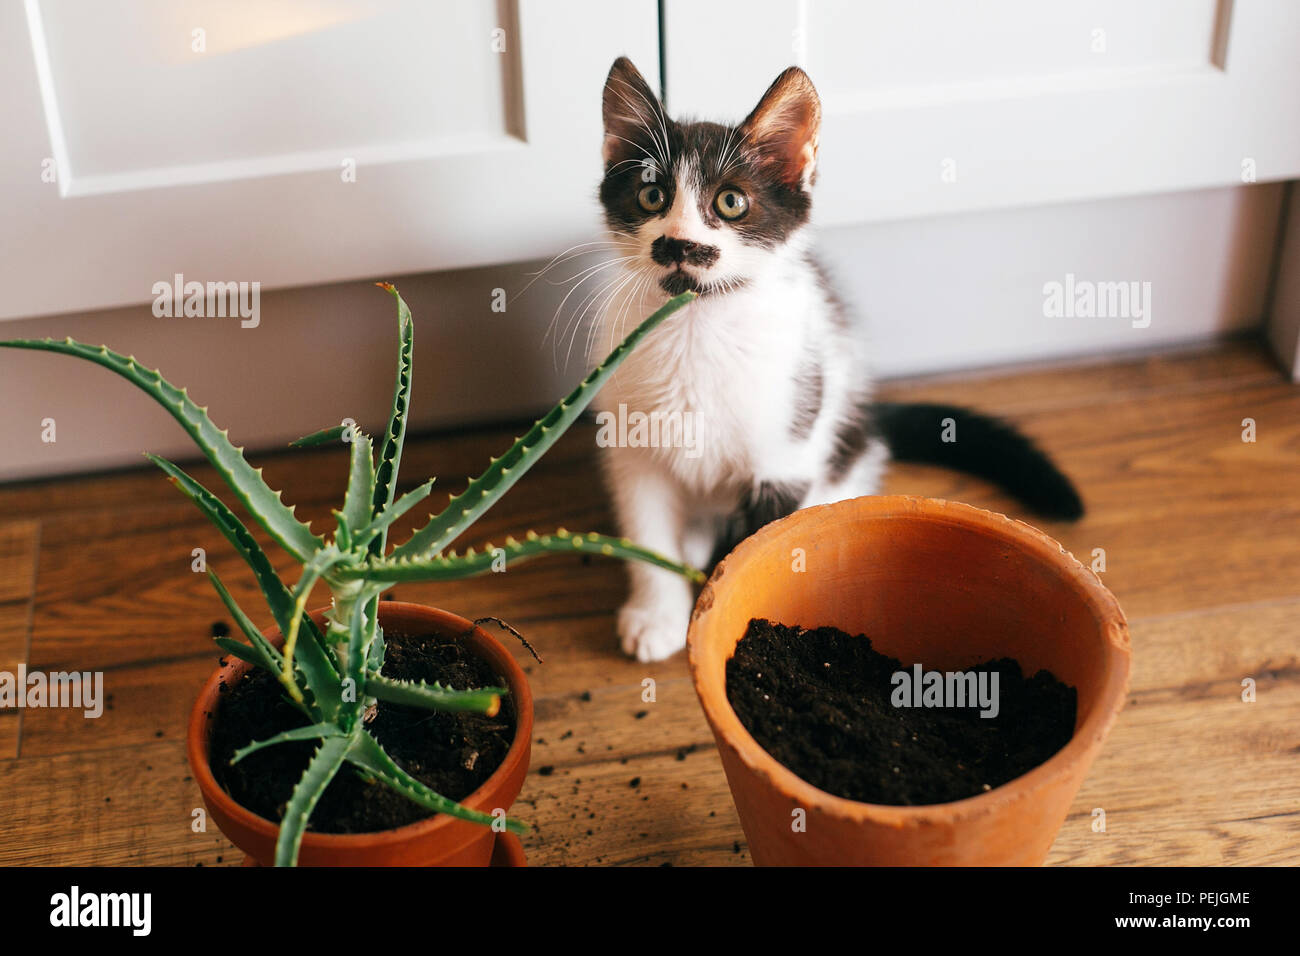 Kitty mit unschuldigen Augen gespiegelt Topf und Aloe vera drinnen sitzen.  Pflege der Pflanzen Sukkulenten auf hölzernen Hintergrund. Gartenarbeit  Konzept. lustige Katze Stockfotografie - Alamy